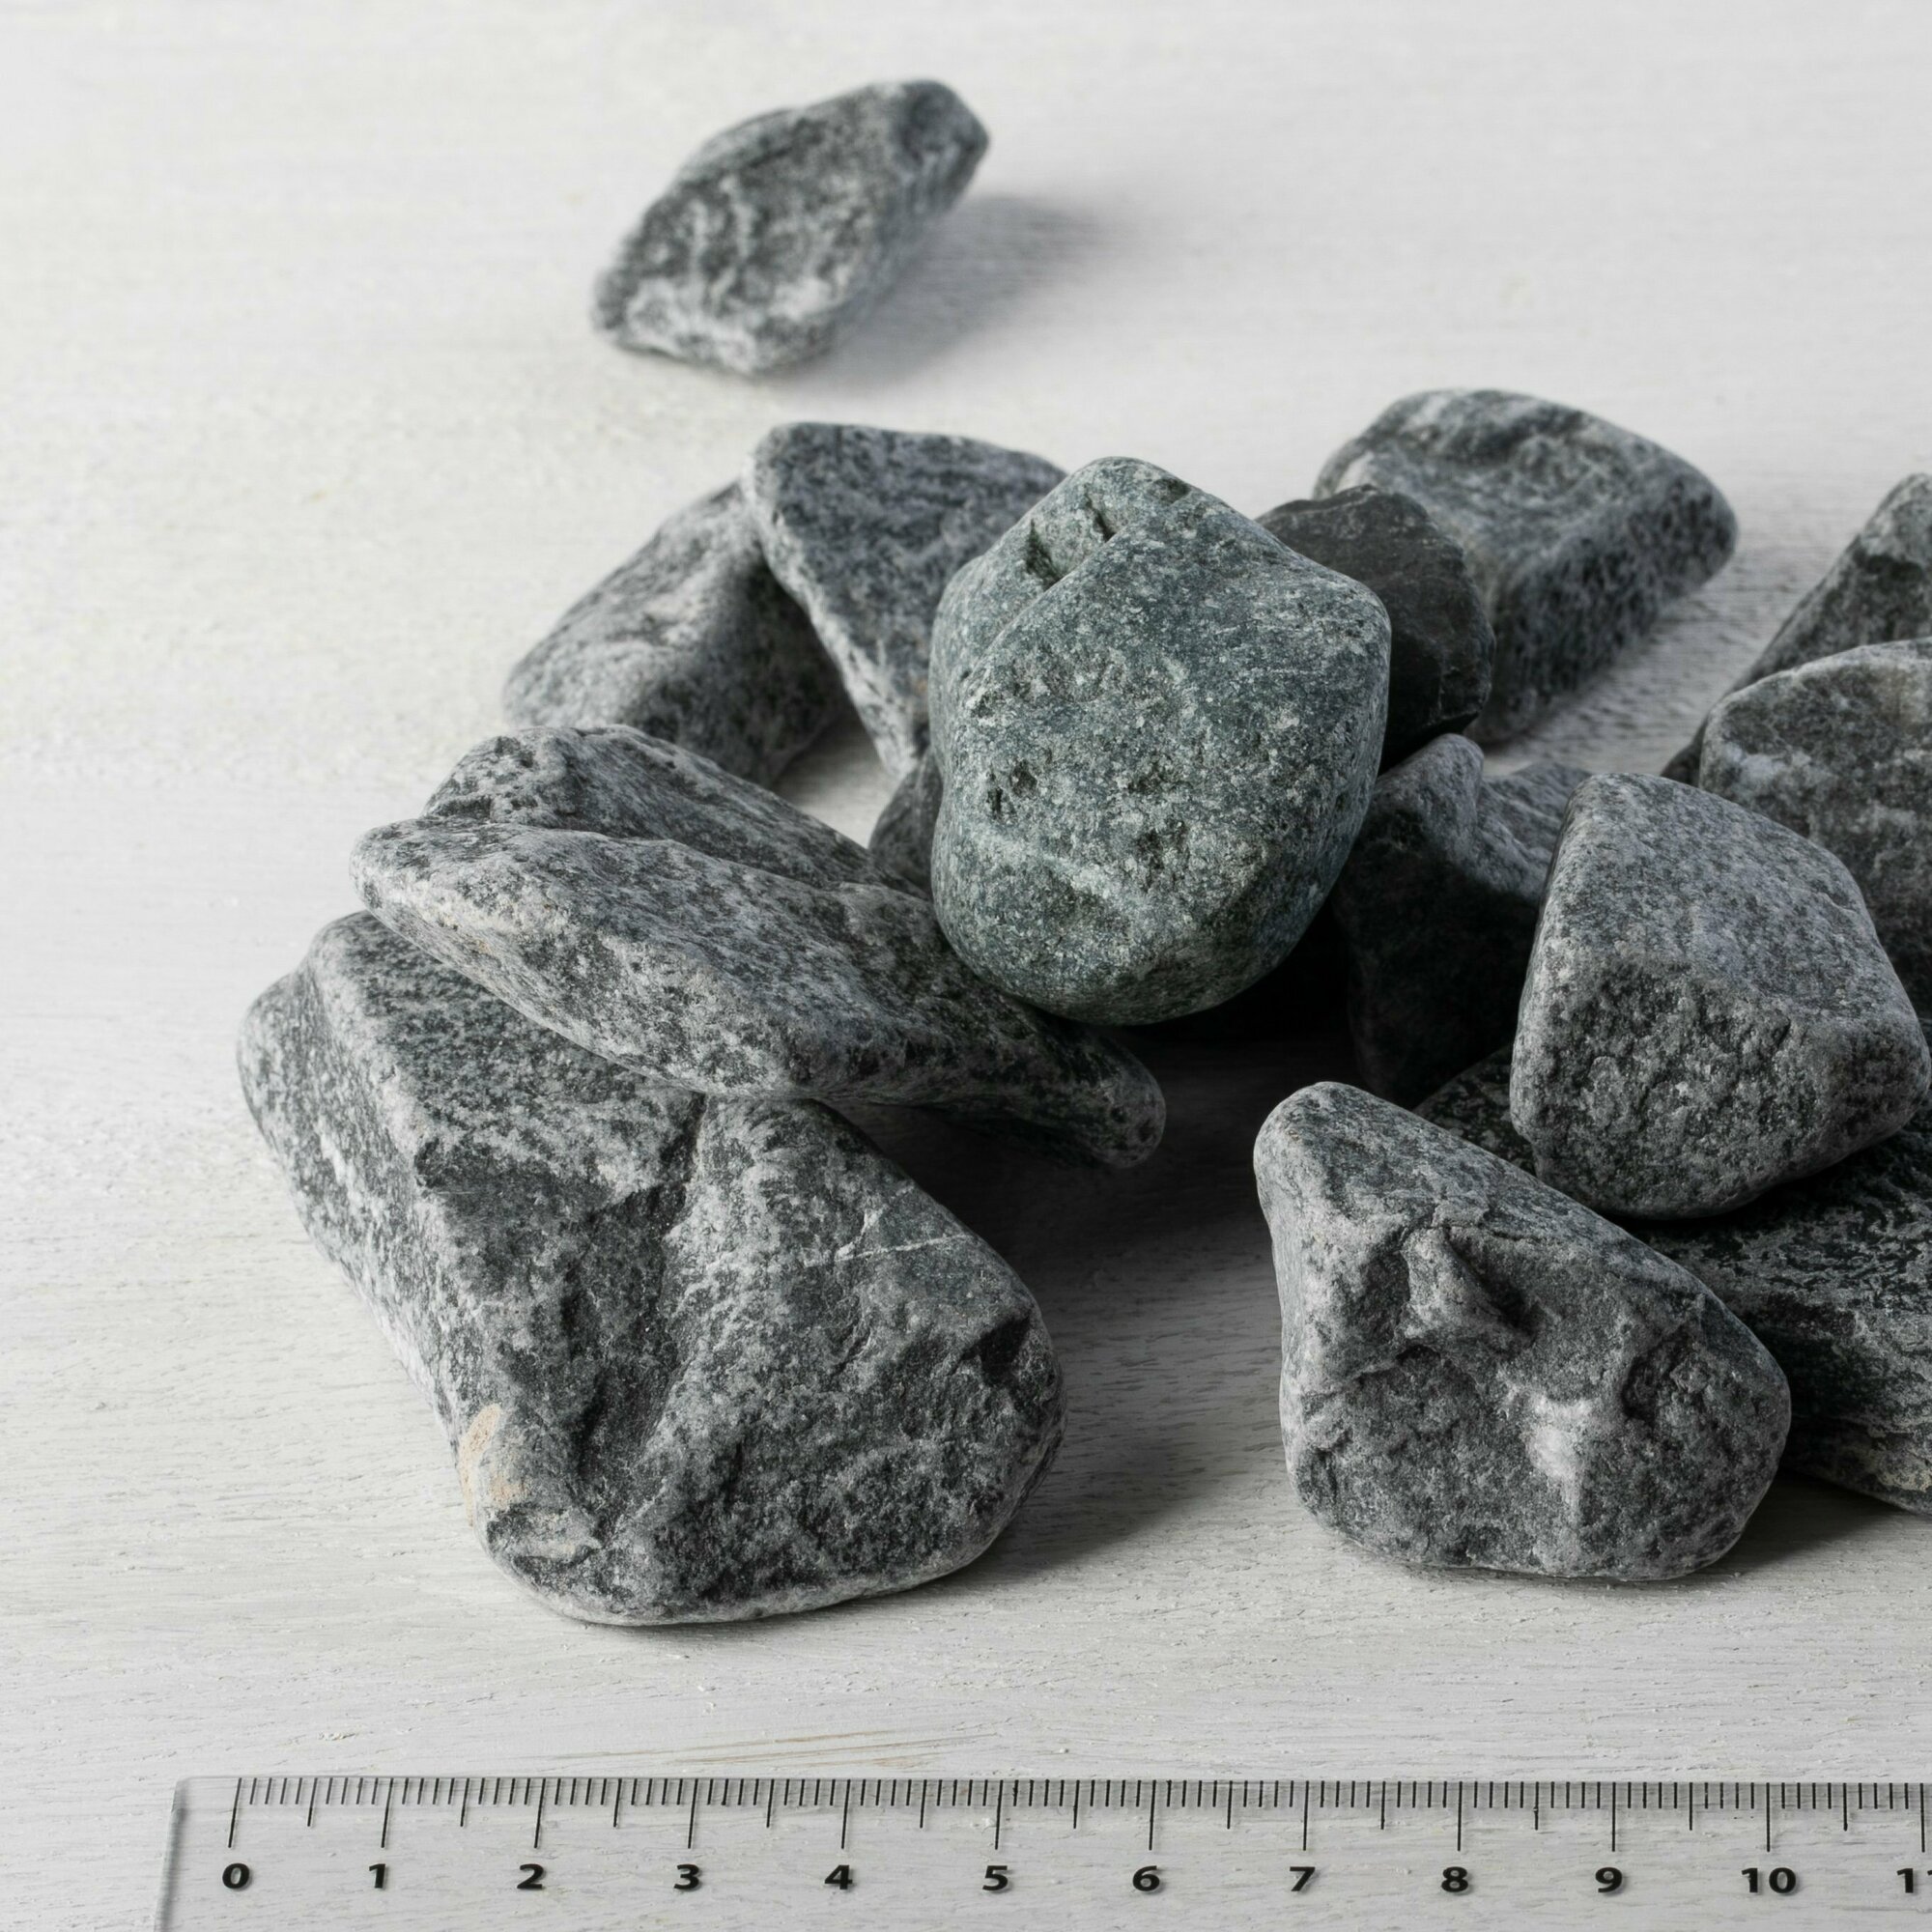 Камень ландшафтный мрамор черный Доломит фракция 20-40 мм 3 кг (319). Декоративный грунт натуральный камень